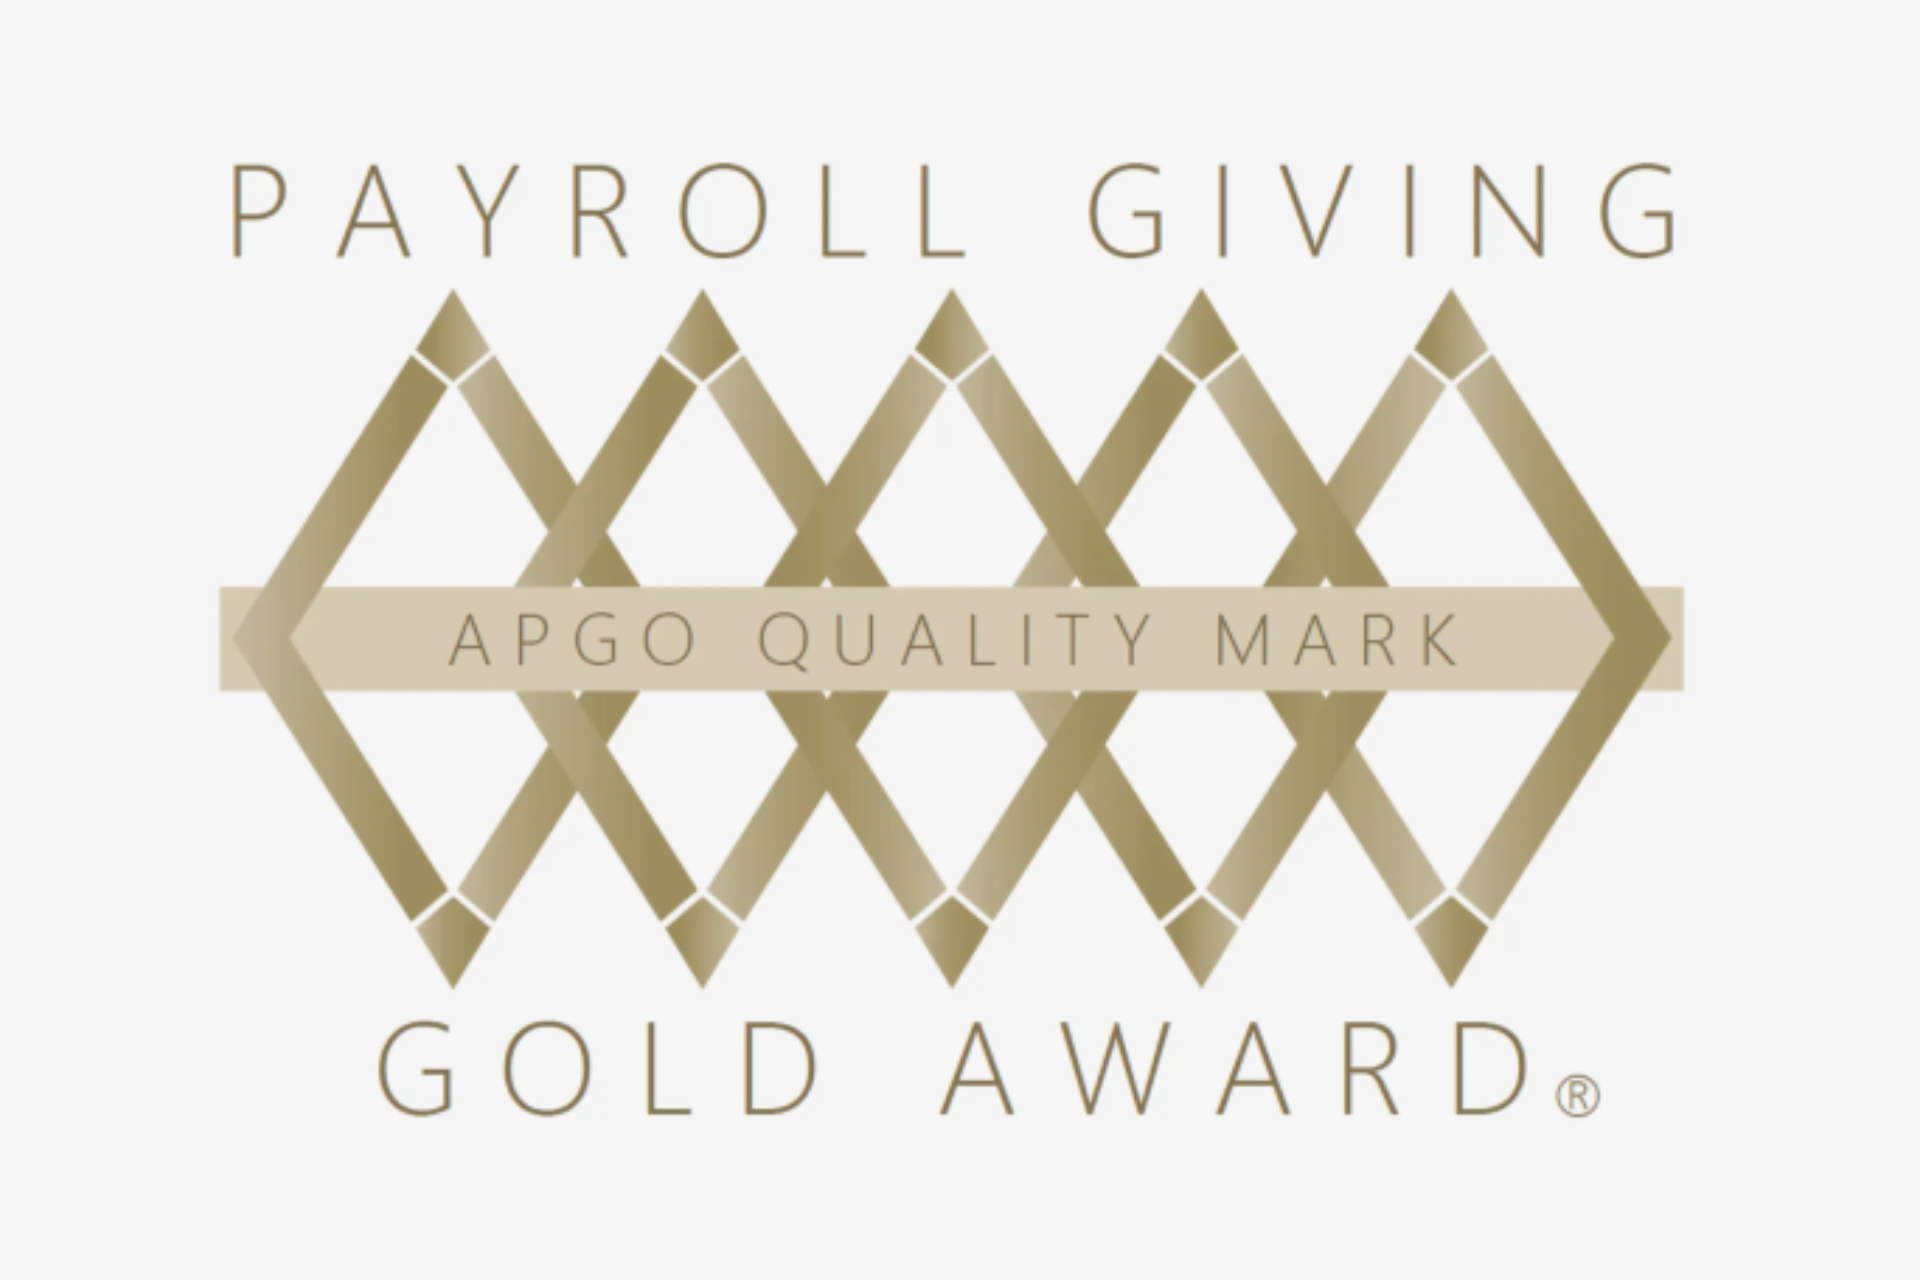 Payroll giving gold award